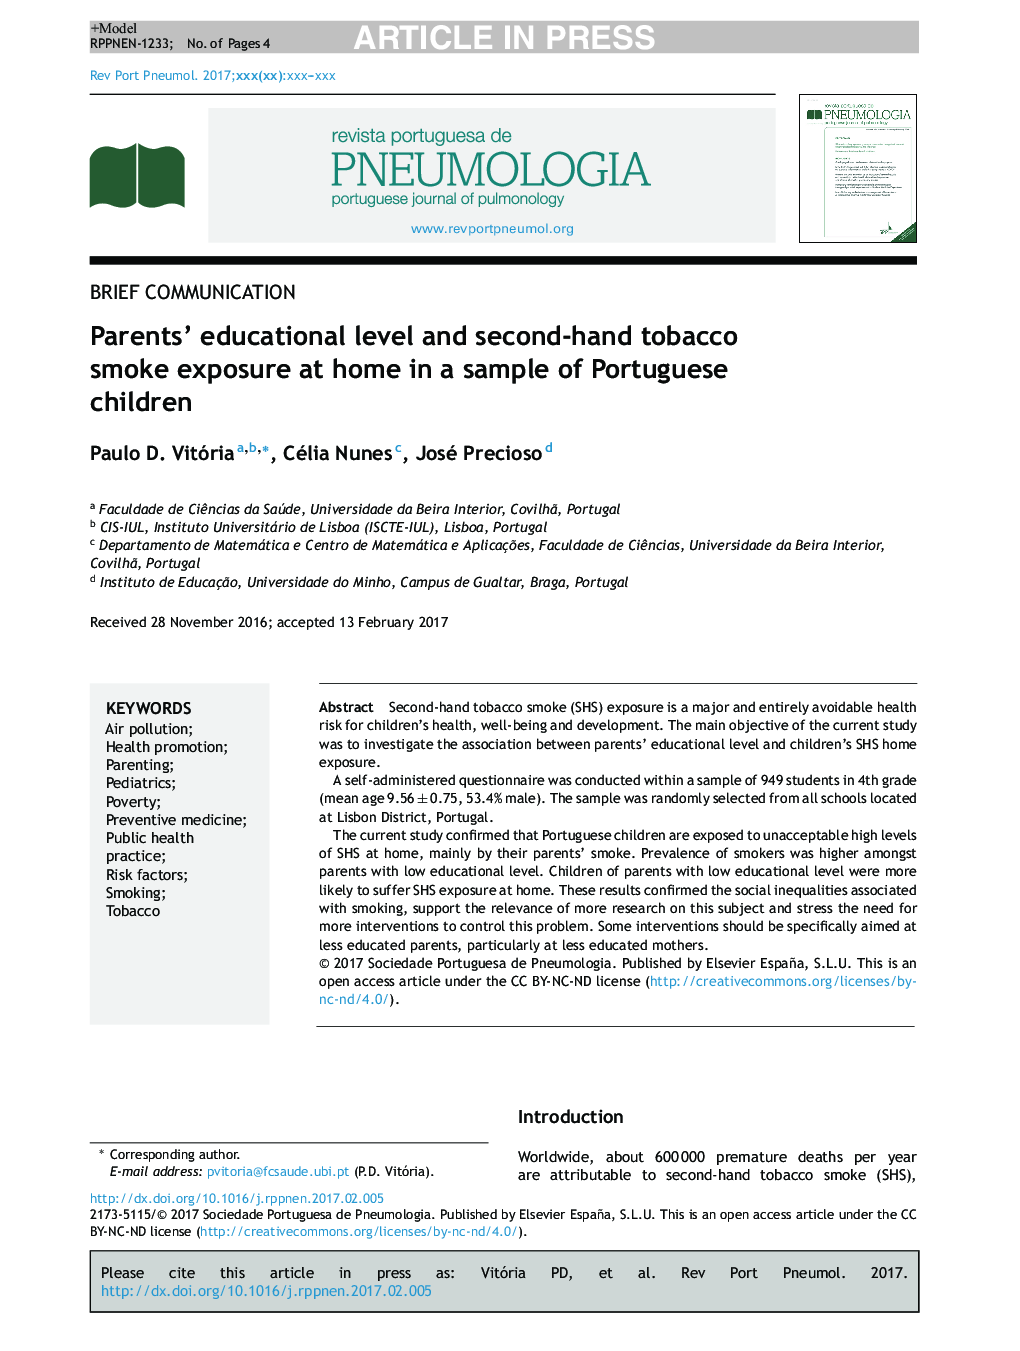 سطح تحصیل والدین و قرار گرفتن در معرض دود سیگار در خانه در یک نمونه از کودکان پرتغالی 